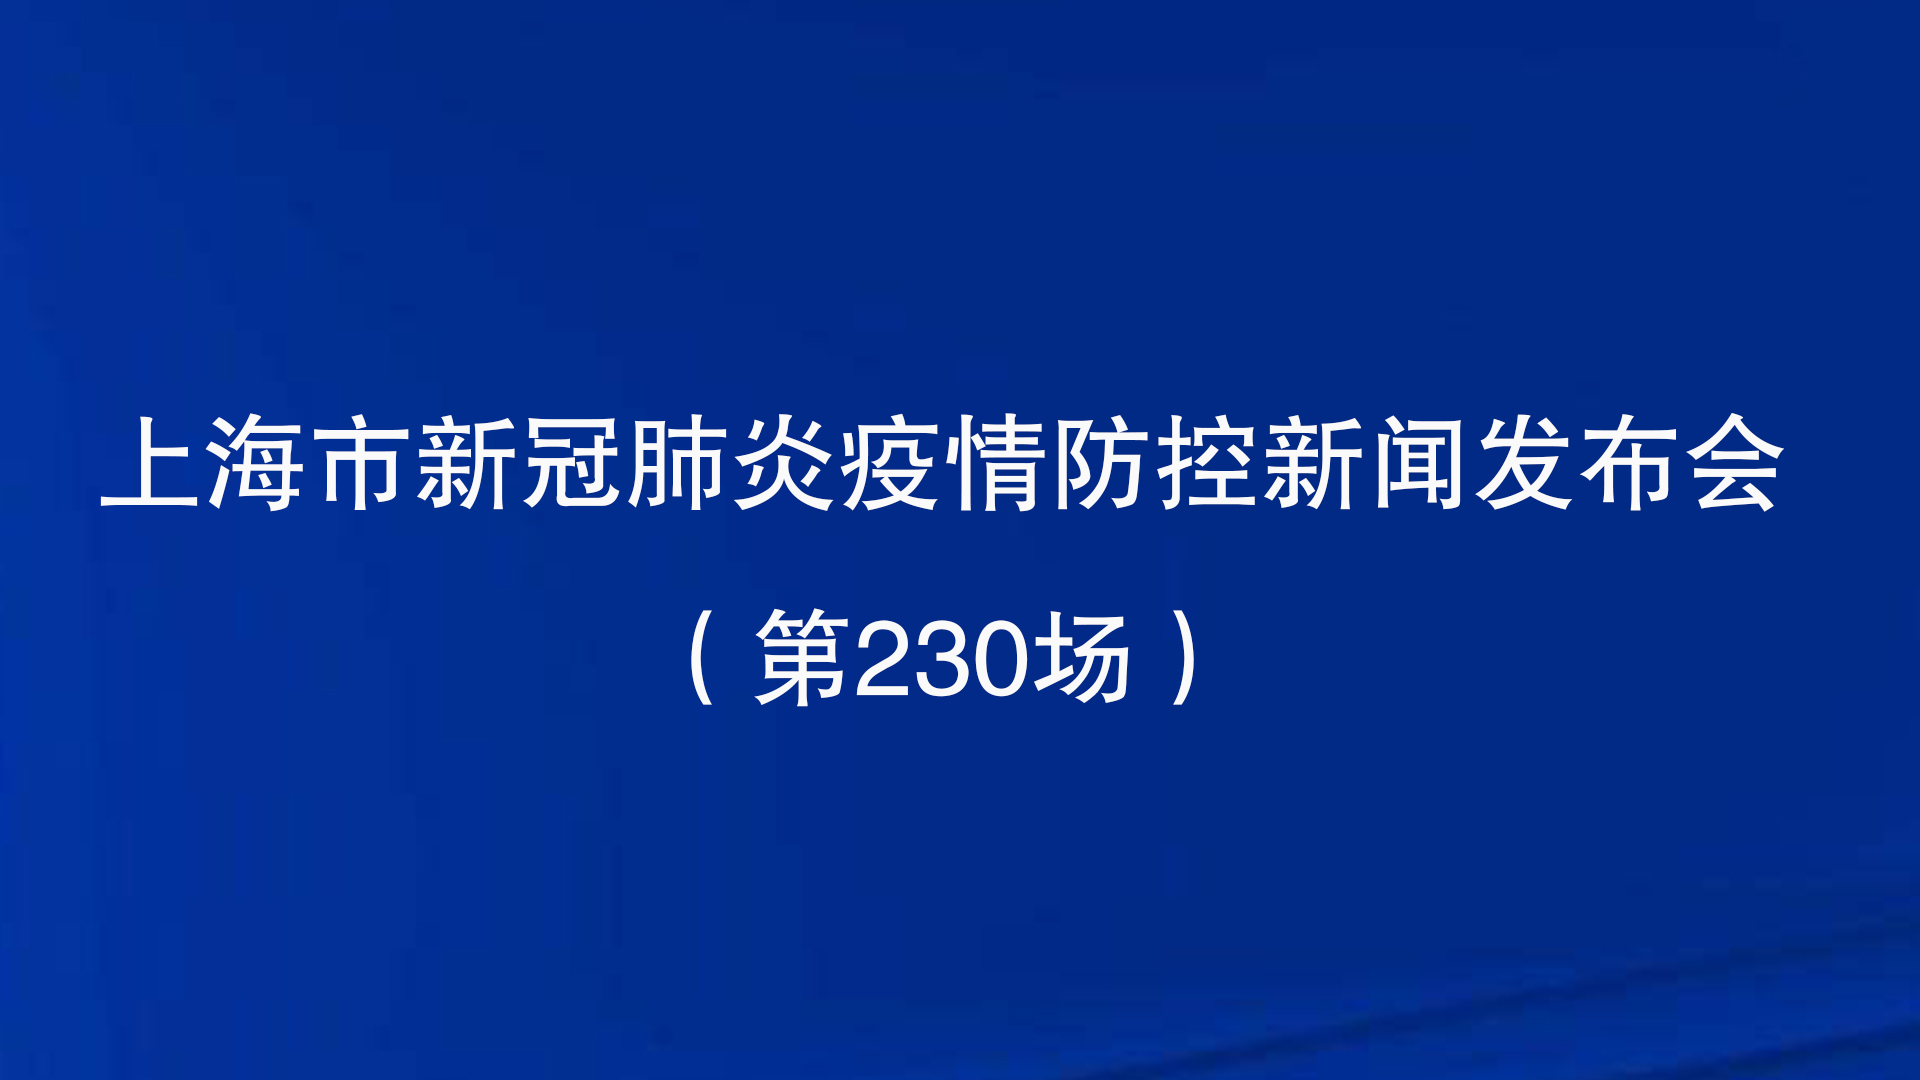 上海市新冠肺炎疫情防控新闻发布会（第230场）